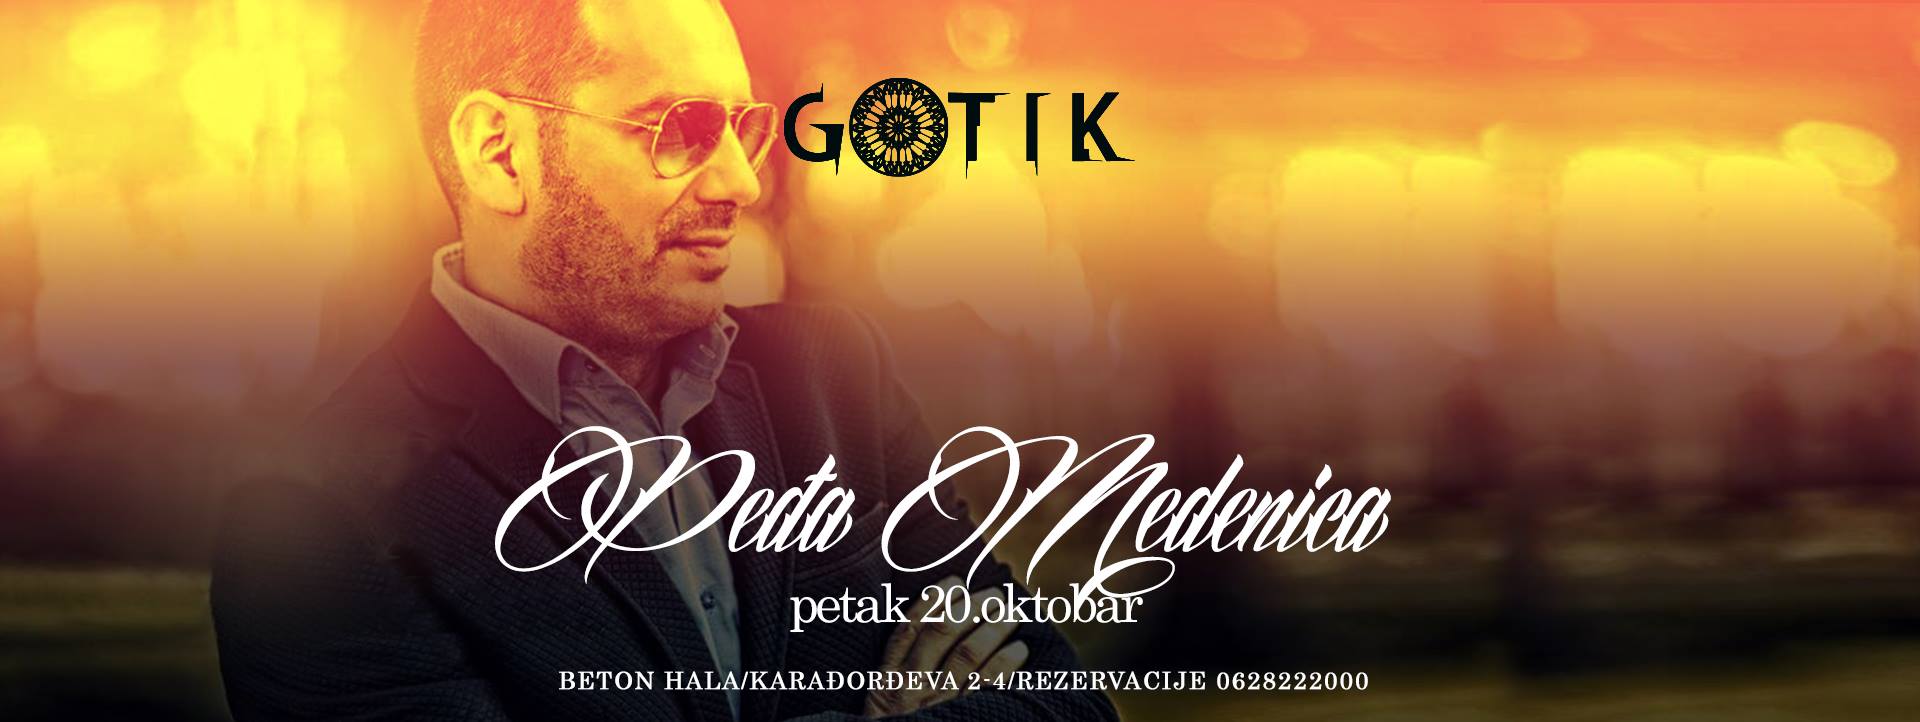 PEĐA MEDENICA 20.10.2017. Gotik, Beograd